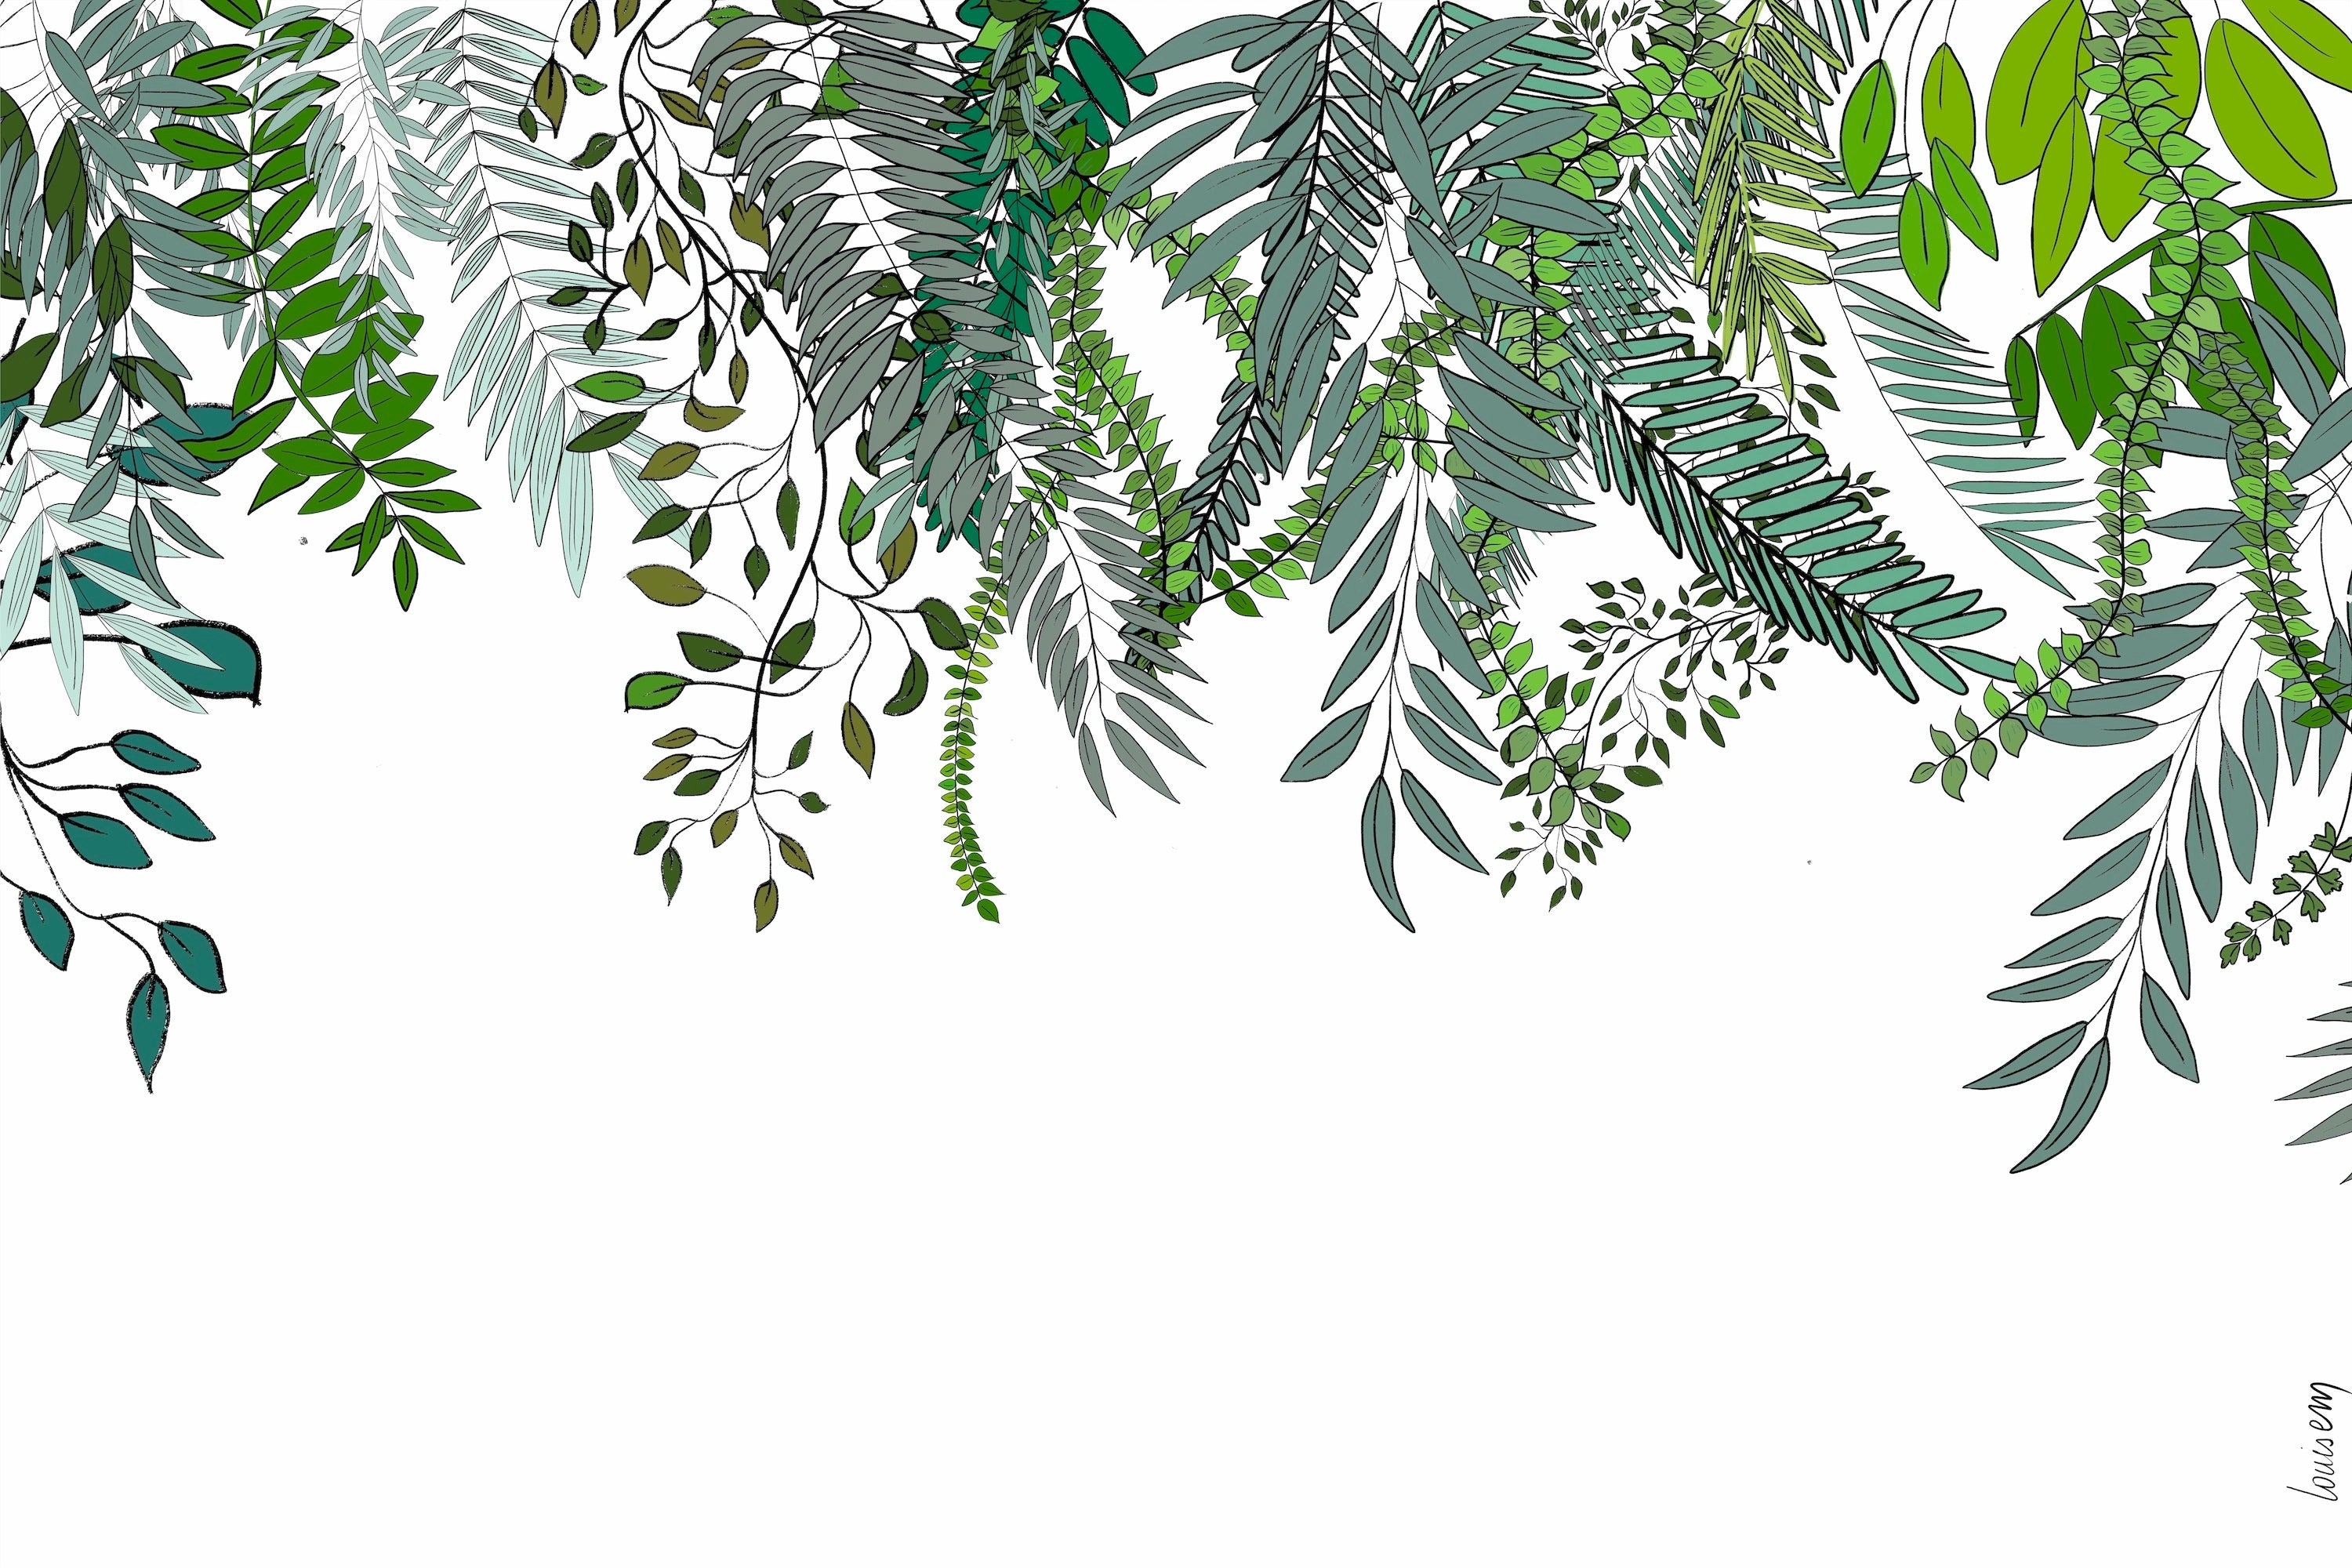 Papier peint représentant des plantes grimpantes florissantes au printemps, avec des feuilles vertes vibrantes et des fleurs délicates émergeant sur un fond clair, apportant une sensation de renouveau et de vitalité à l'espace.